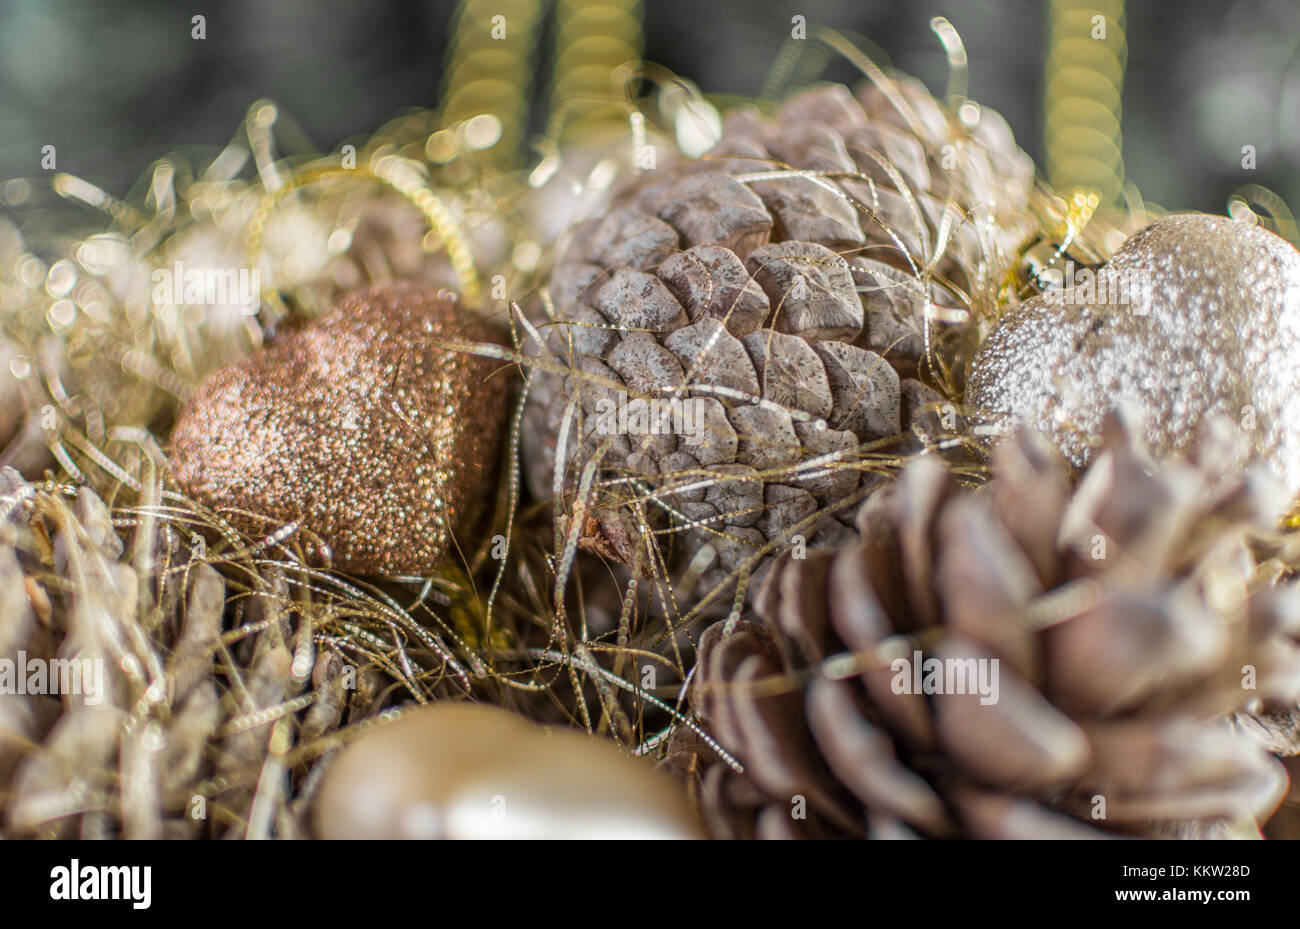 Colorful golden décorations de Noël d'un panier en bois avec des pommes de pin fait avec effet granuleux désaturées. L'extrême profondeur de champ et la couleur Banque D'Images